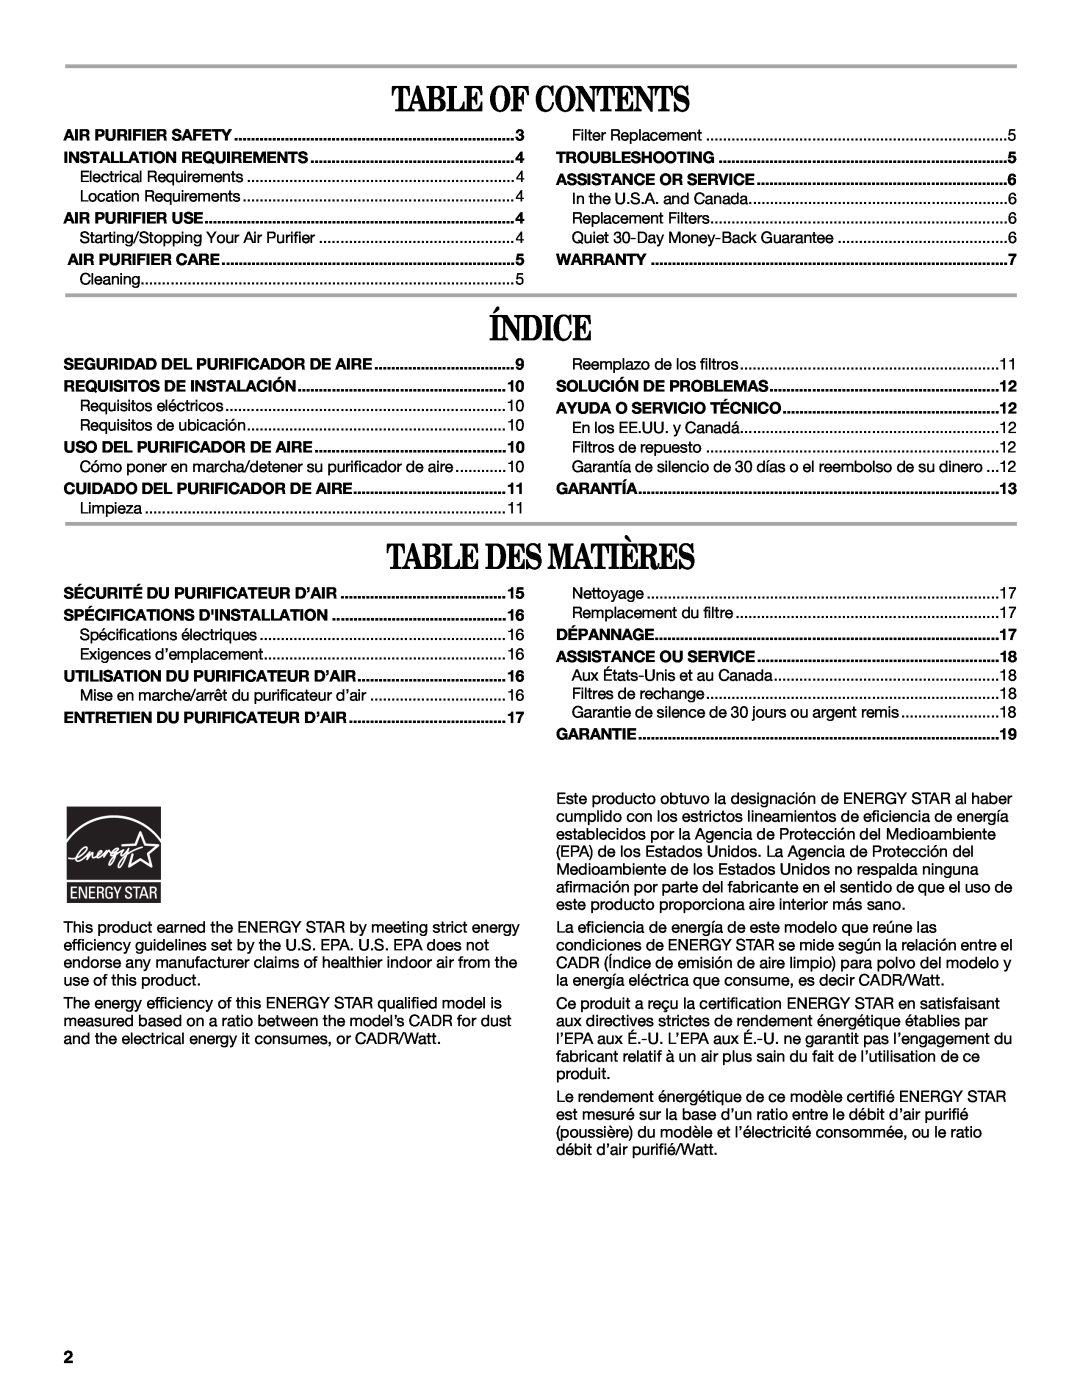 Whirlpool AP250, AP450 manual Table Of Contents, Índice, Table Des Matières 